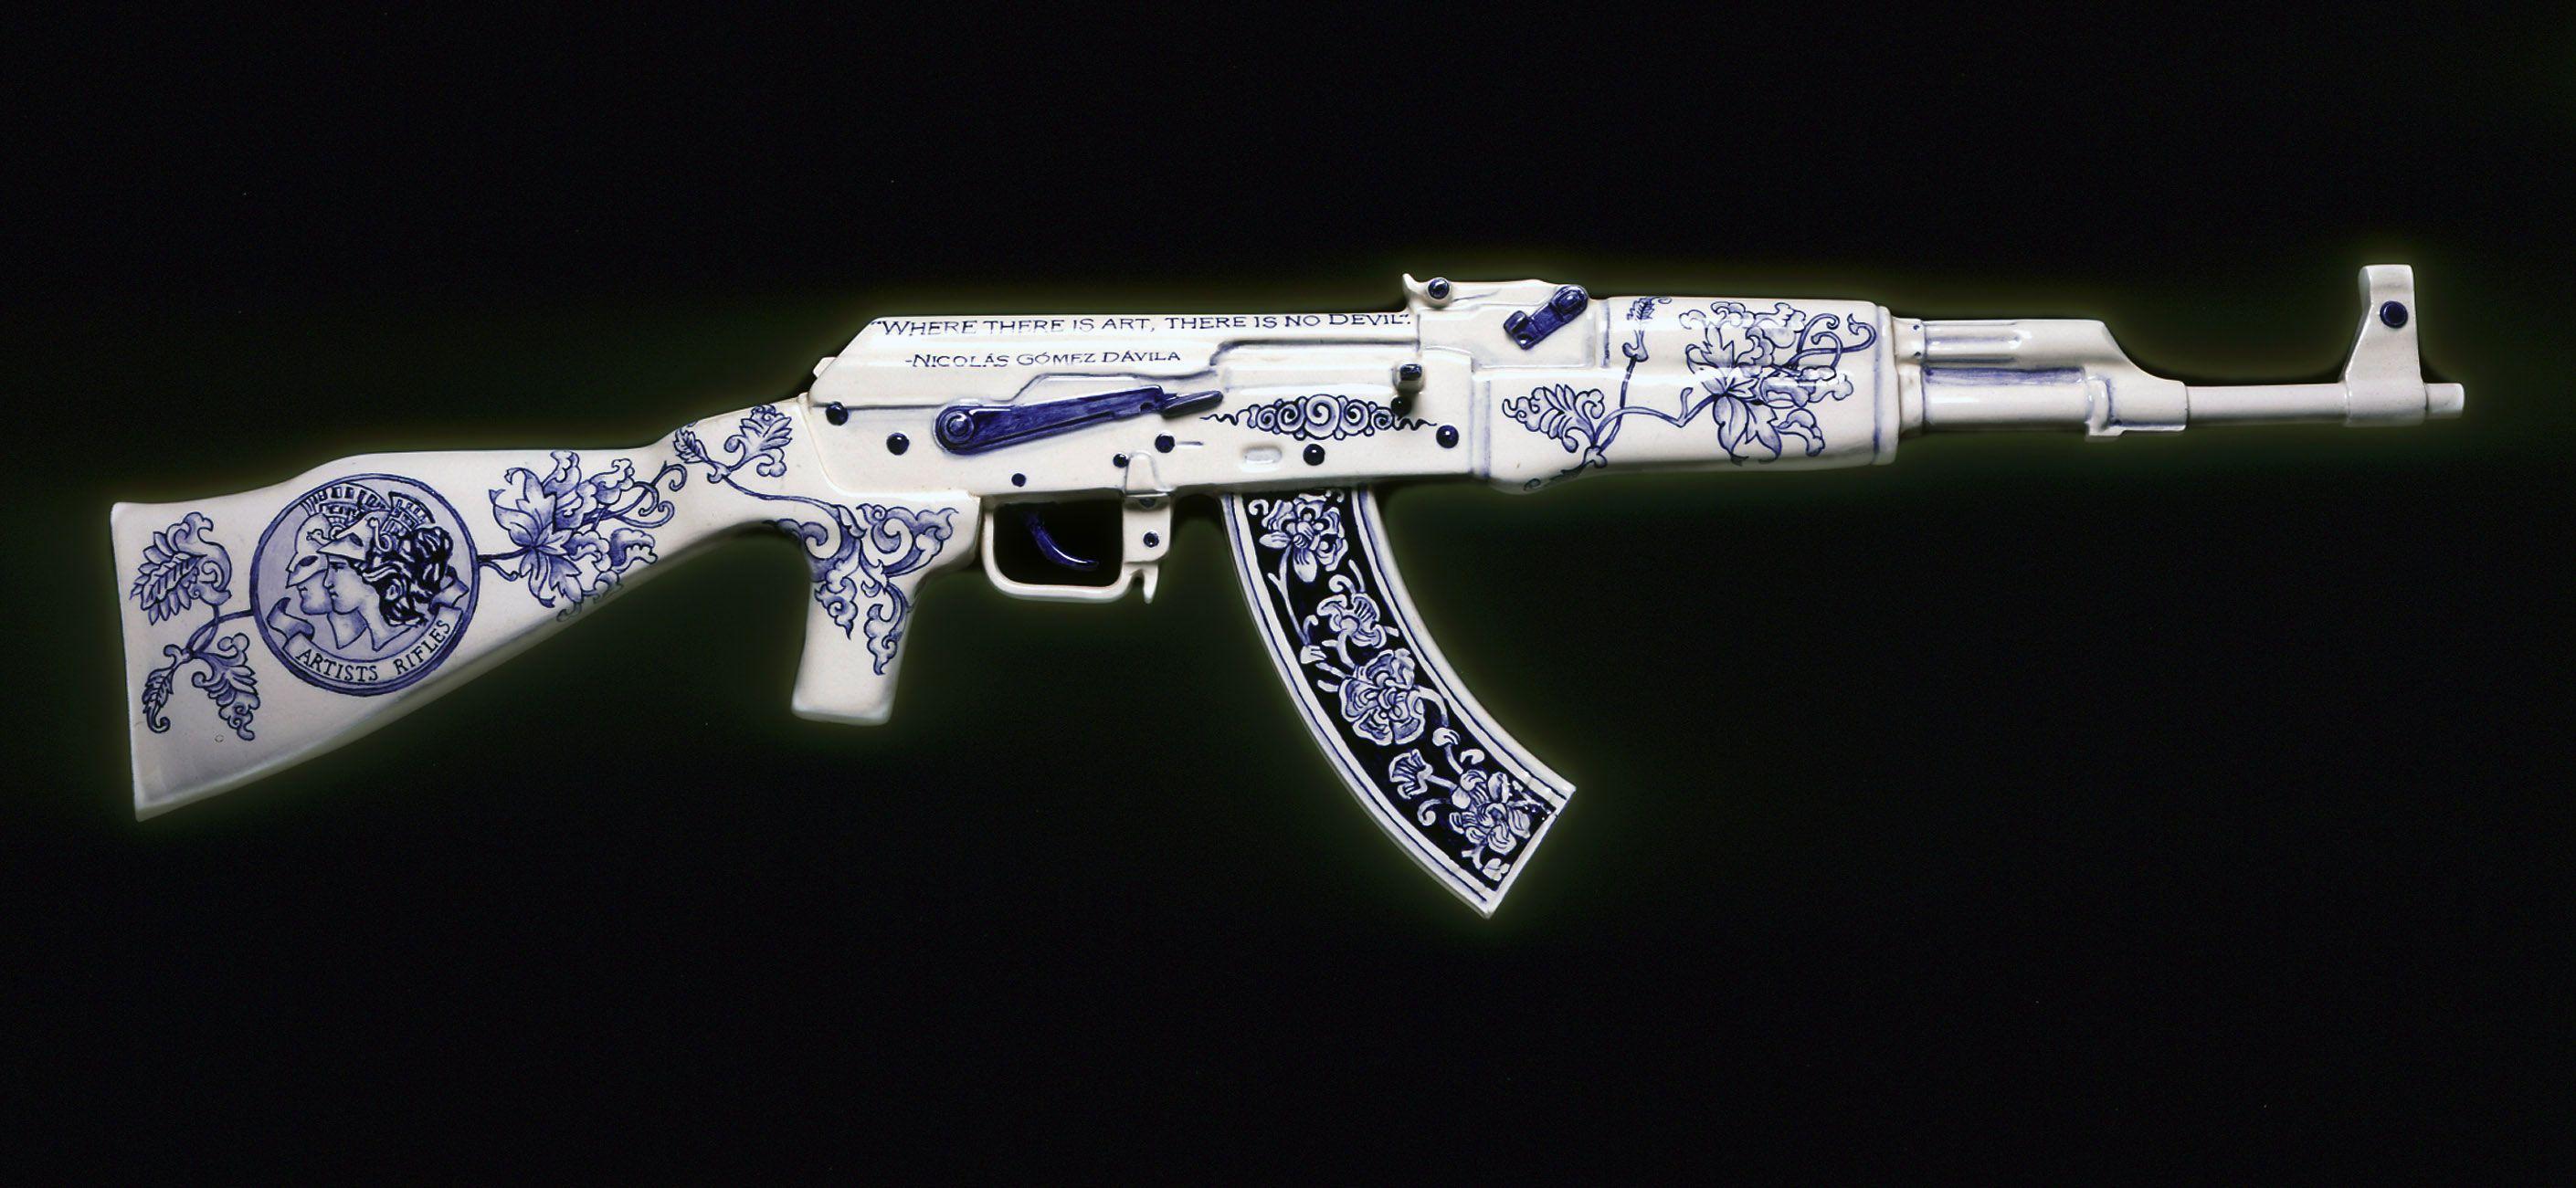 Guns Ak 47 Shapes wallpaper at GetHDPic.com